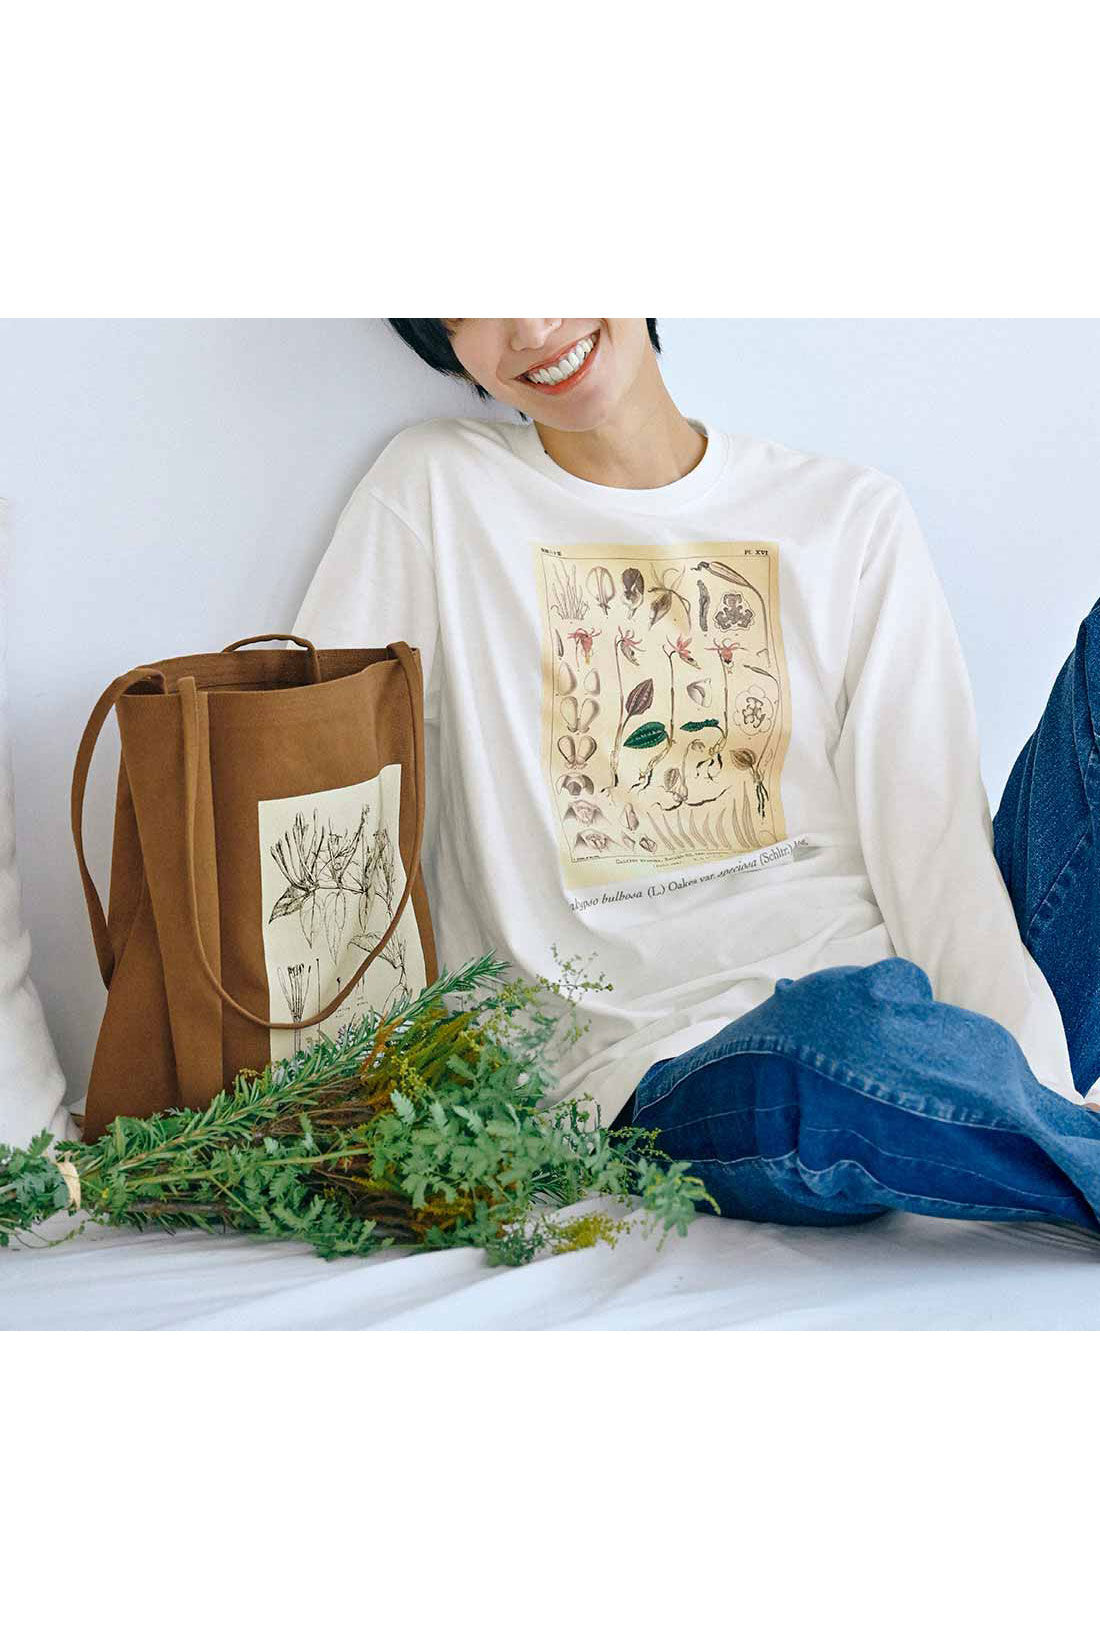 牧野植物園×IEDIT[イディット]コラボ 牧野博士の描いた植物図プリントTシャツの会